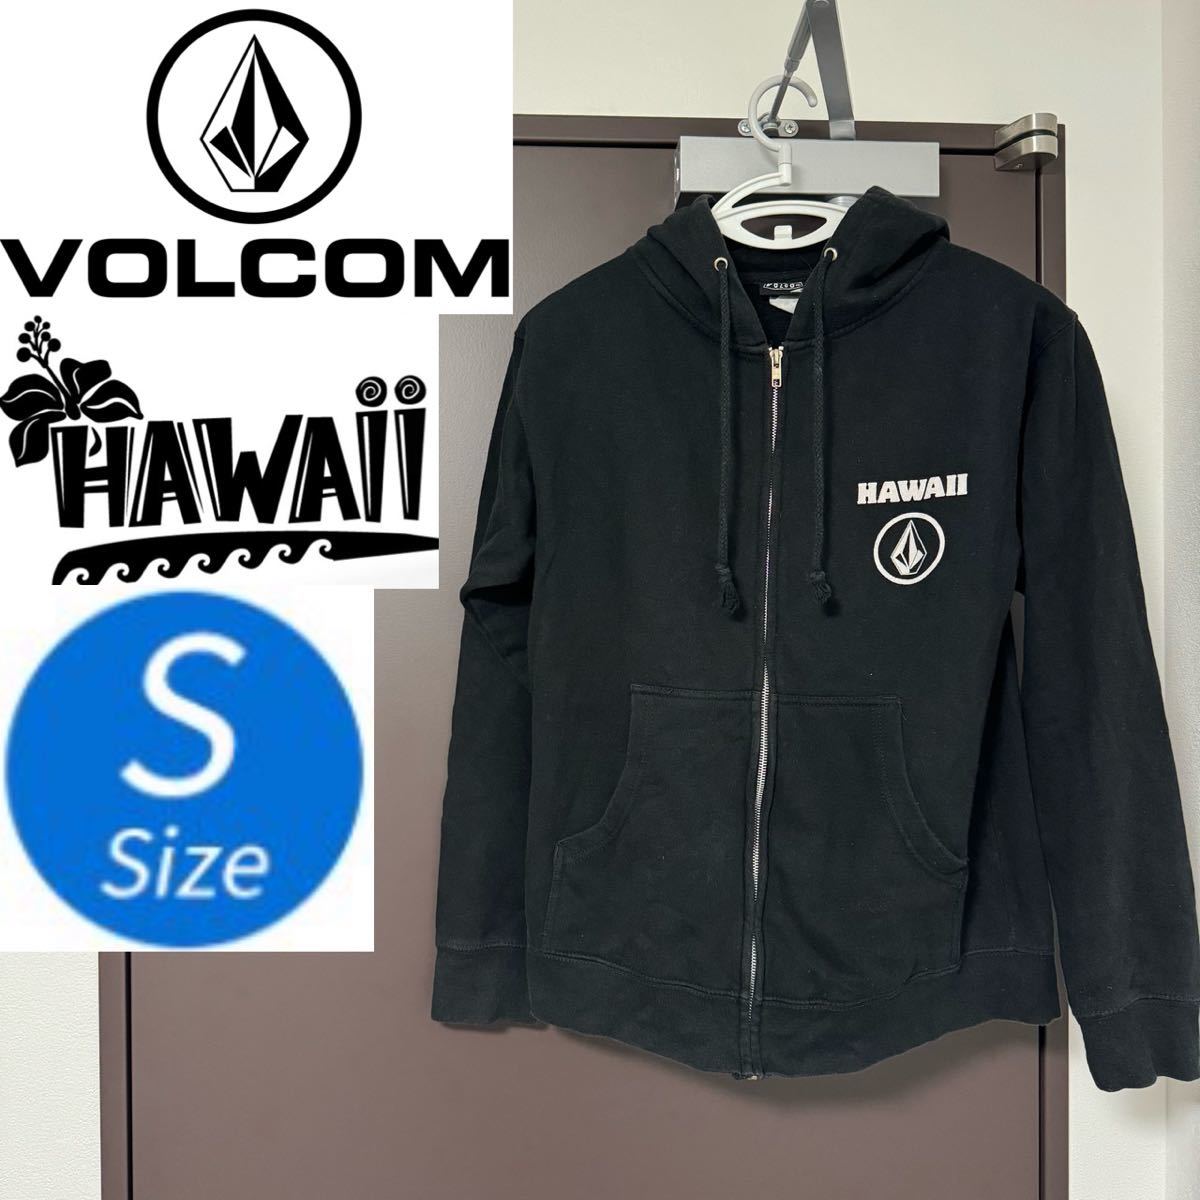 Volcom ボルコム ヴォルコム パーカー ジャケット 黒 ブラック Sサイズ S ロゴ ハワイ ハワイ限定 ジップアップ メンズ レディース 現地_画像1